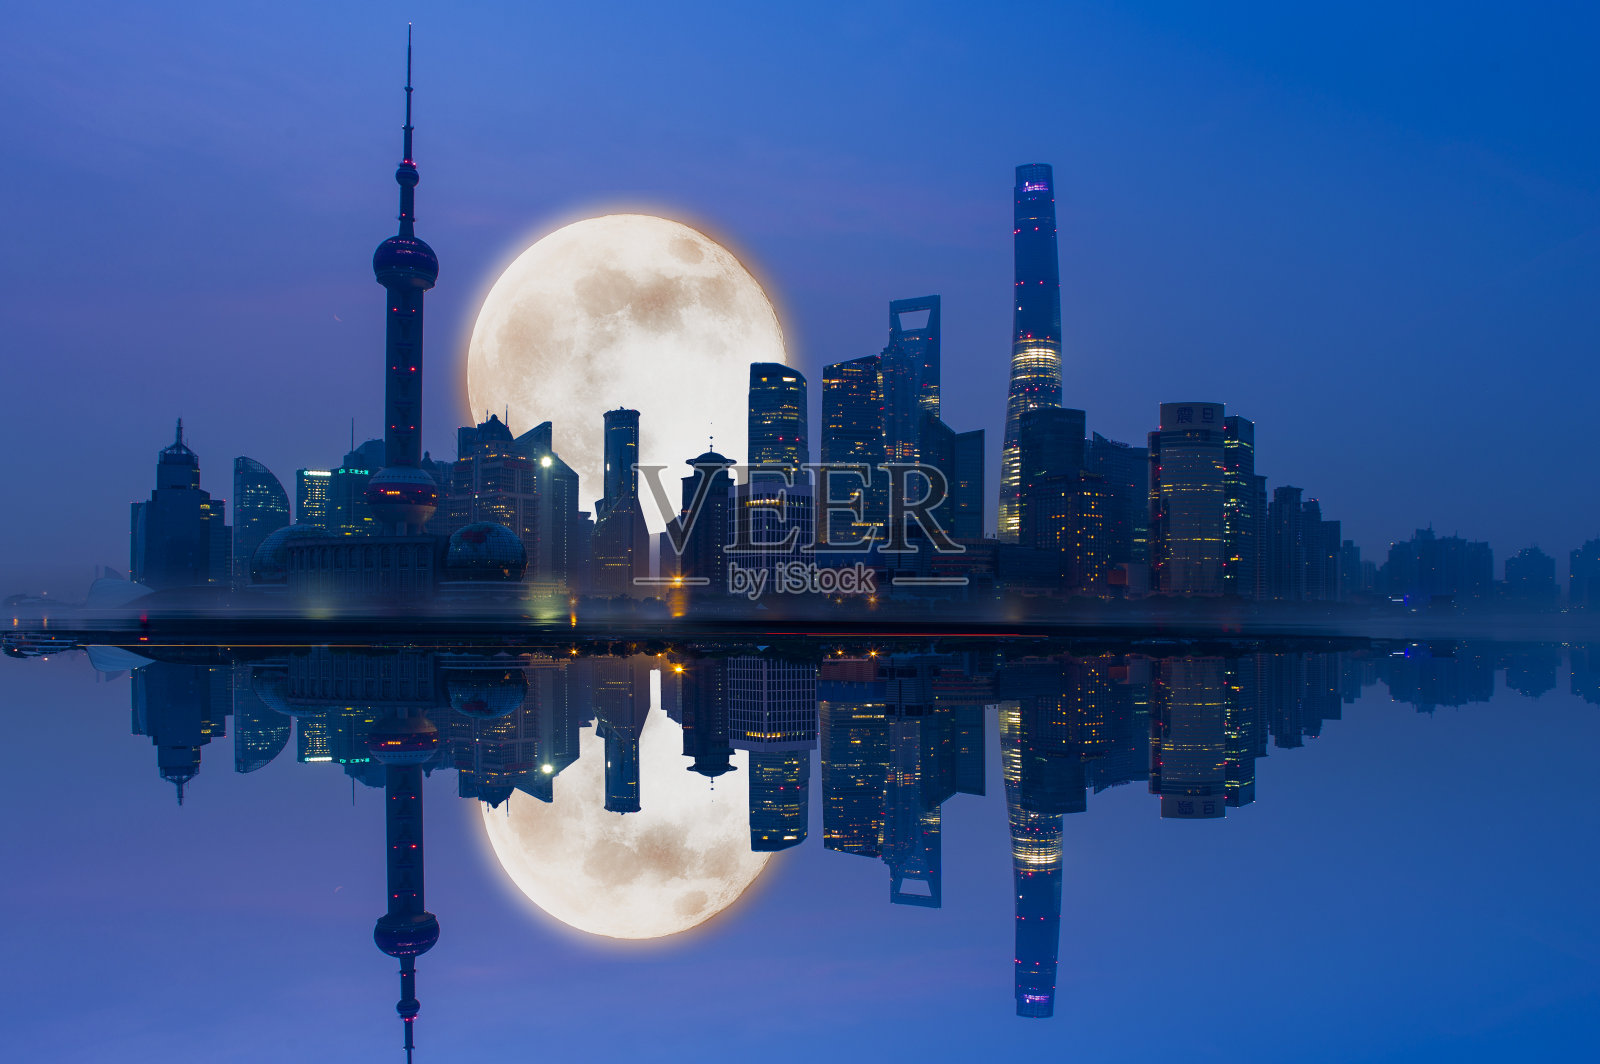 中秋节的夜晚繁华的外滩天空上挂着一轮明月照片摄影图片